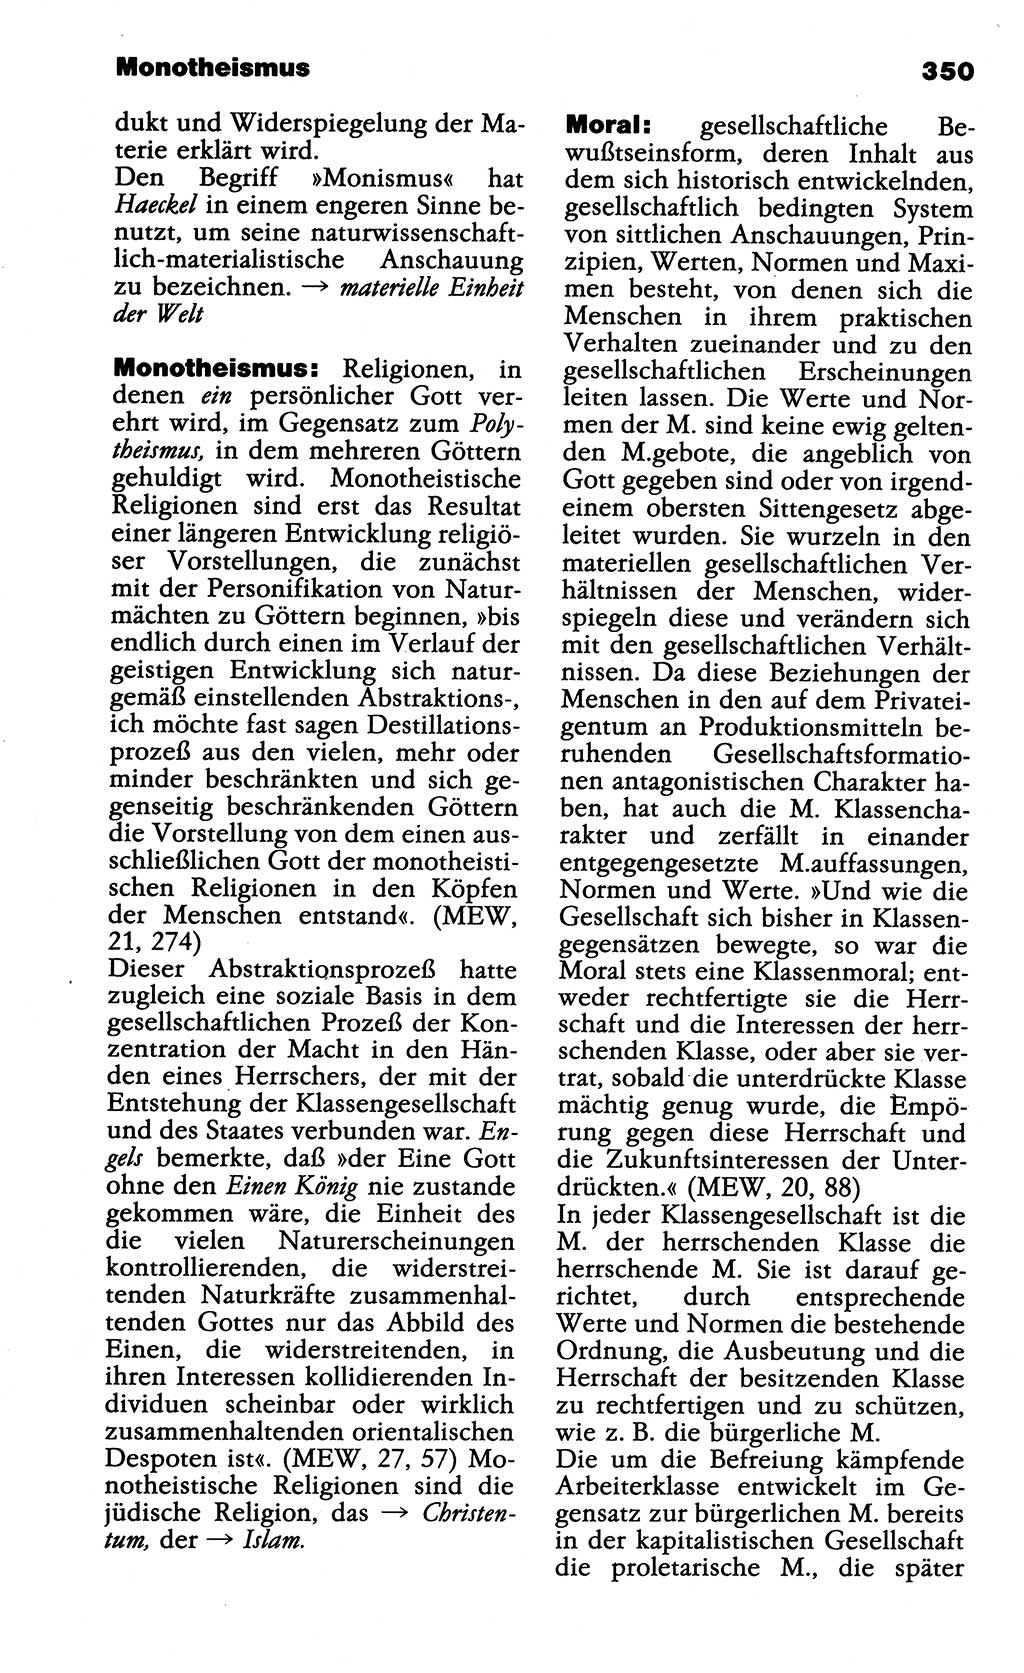 Wörterbuch der marxistisch-leninistischen Philosophie [Deutsche Demokratische Republik (DDR)] 1985, Seite 350 (Wb. ML Phil. DDR 1985, S. 350)